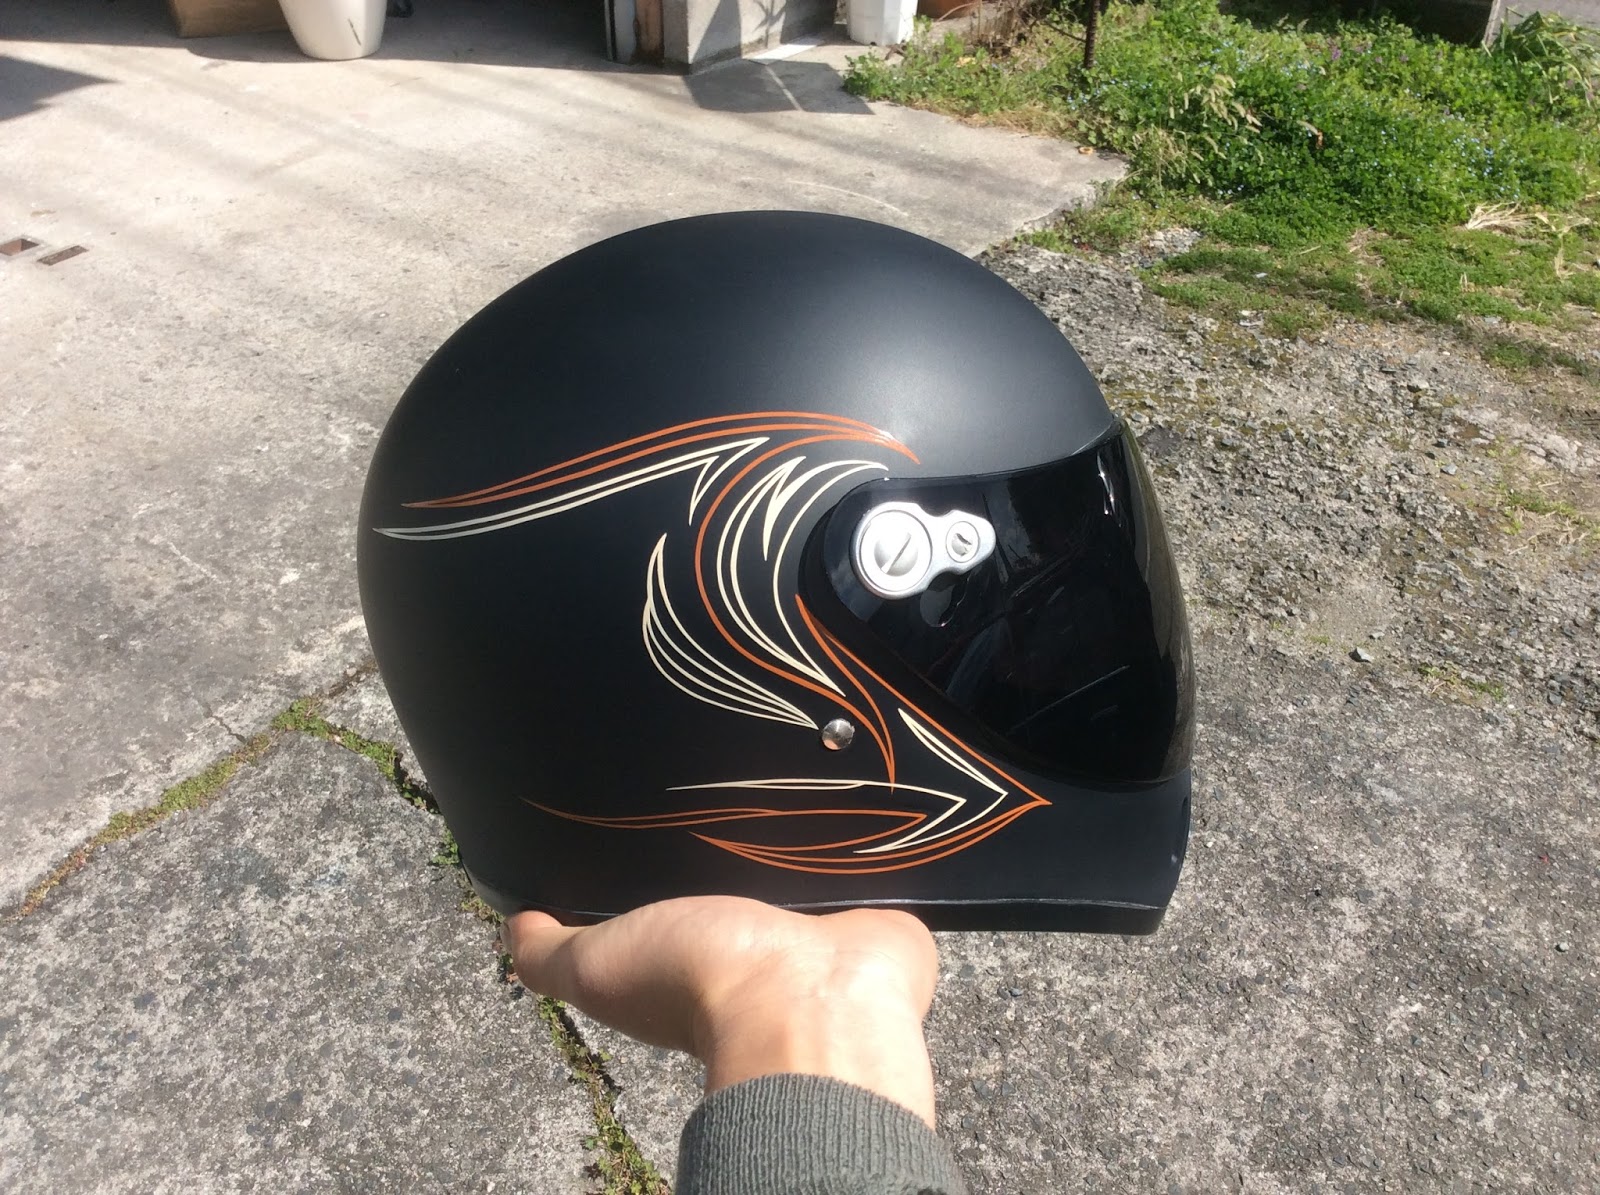 ORVIS ONE 熊本 バイク 塗装: helmet ピンストライプ